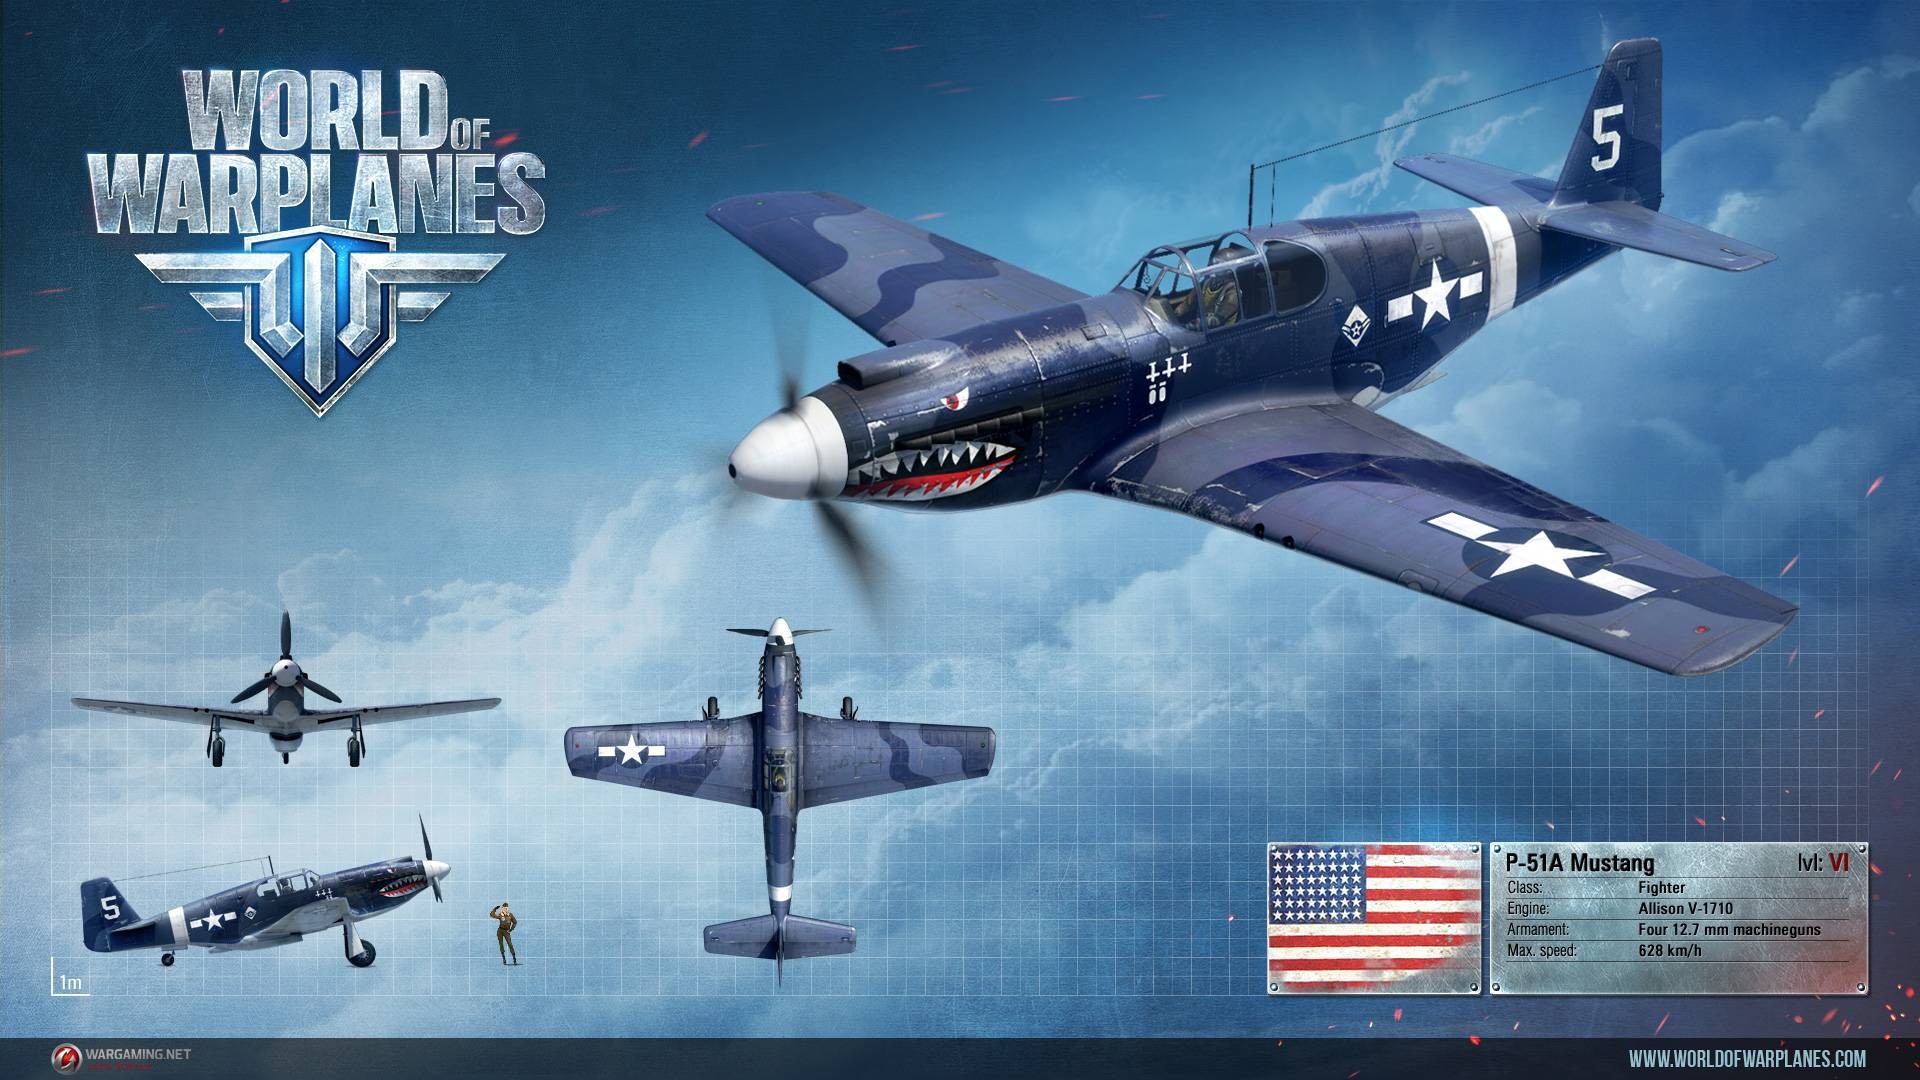 1920x1080 ... World of Warplanes wallpaper 3 ...